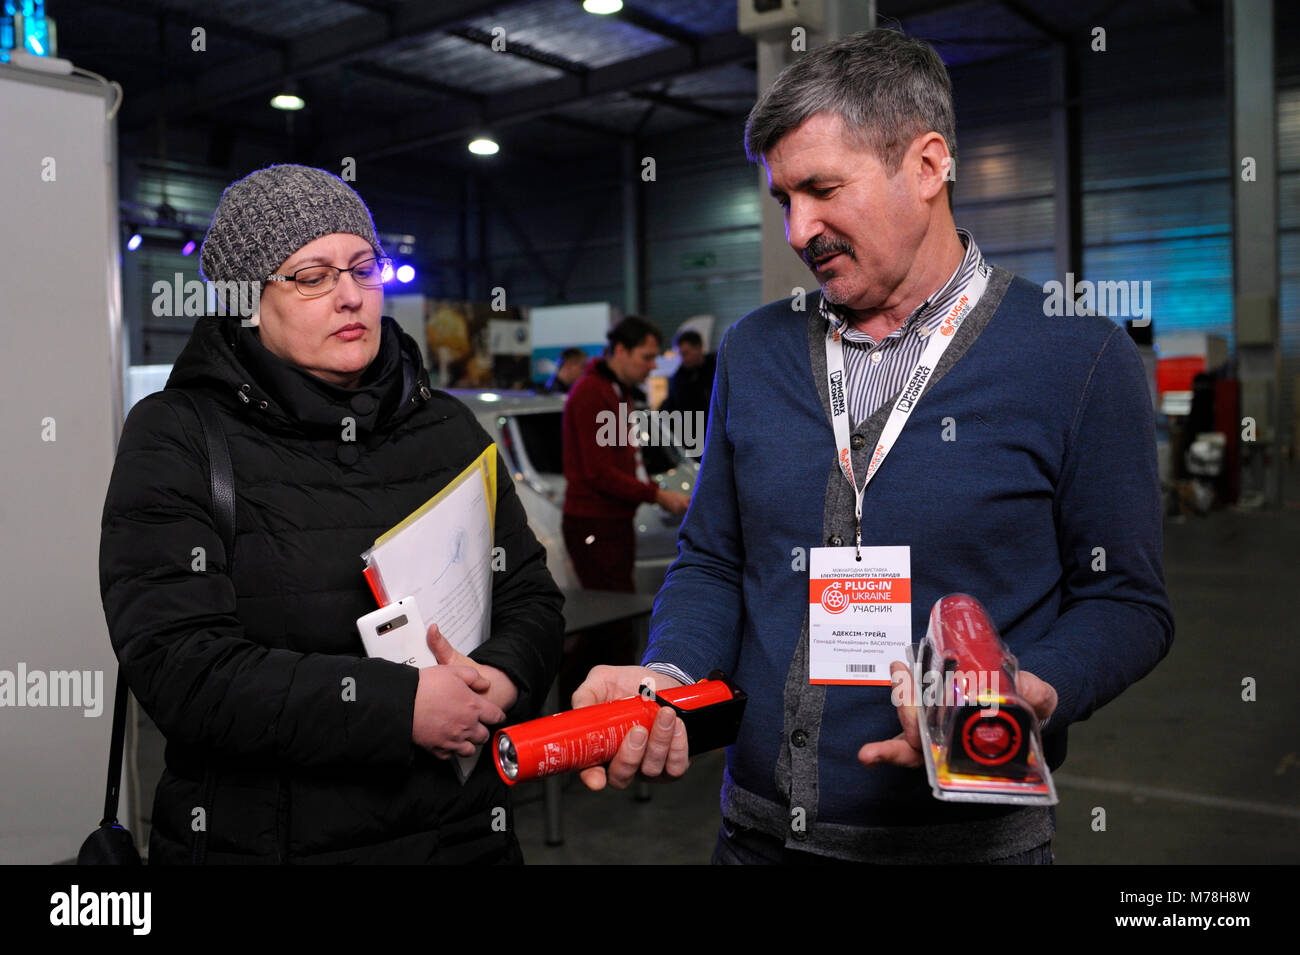 Sales Manager holding aerosol les extincteurs dans les mains de dire à un client d'avantages pour les voitures.Le 2 mars 2018. Kiev Expo Center. Kiev, Ukraine Banque D'Images